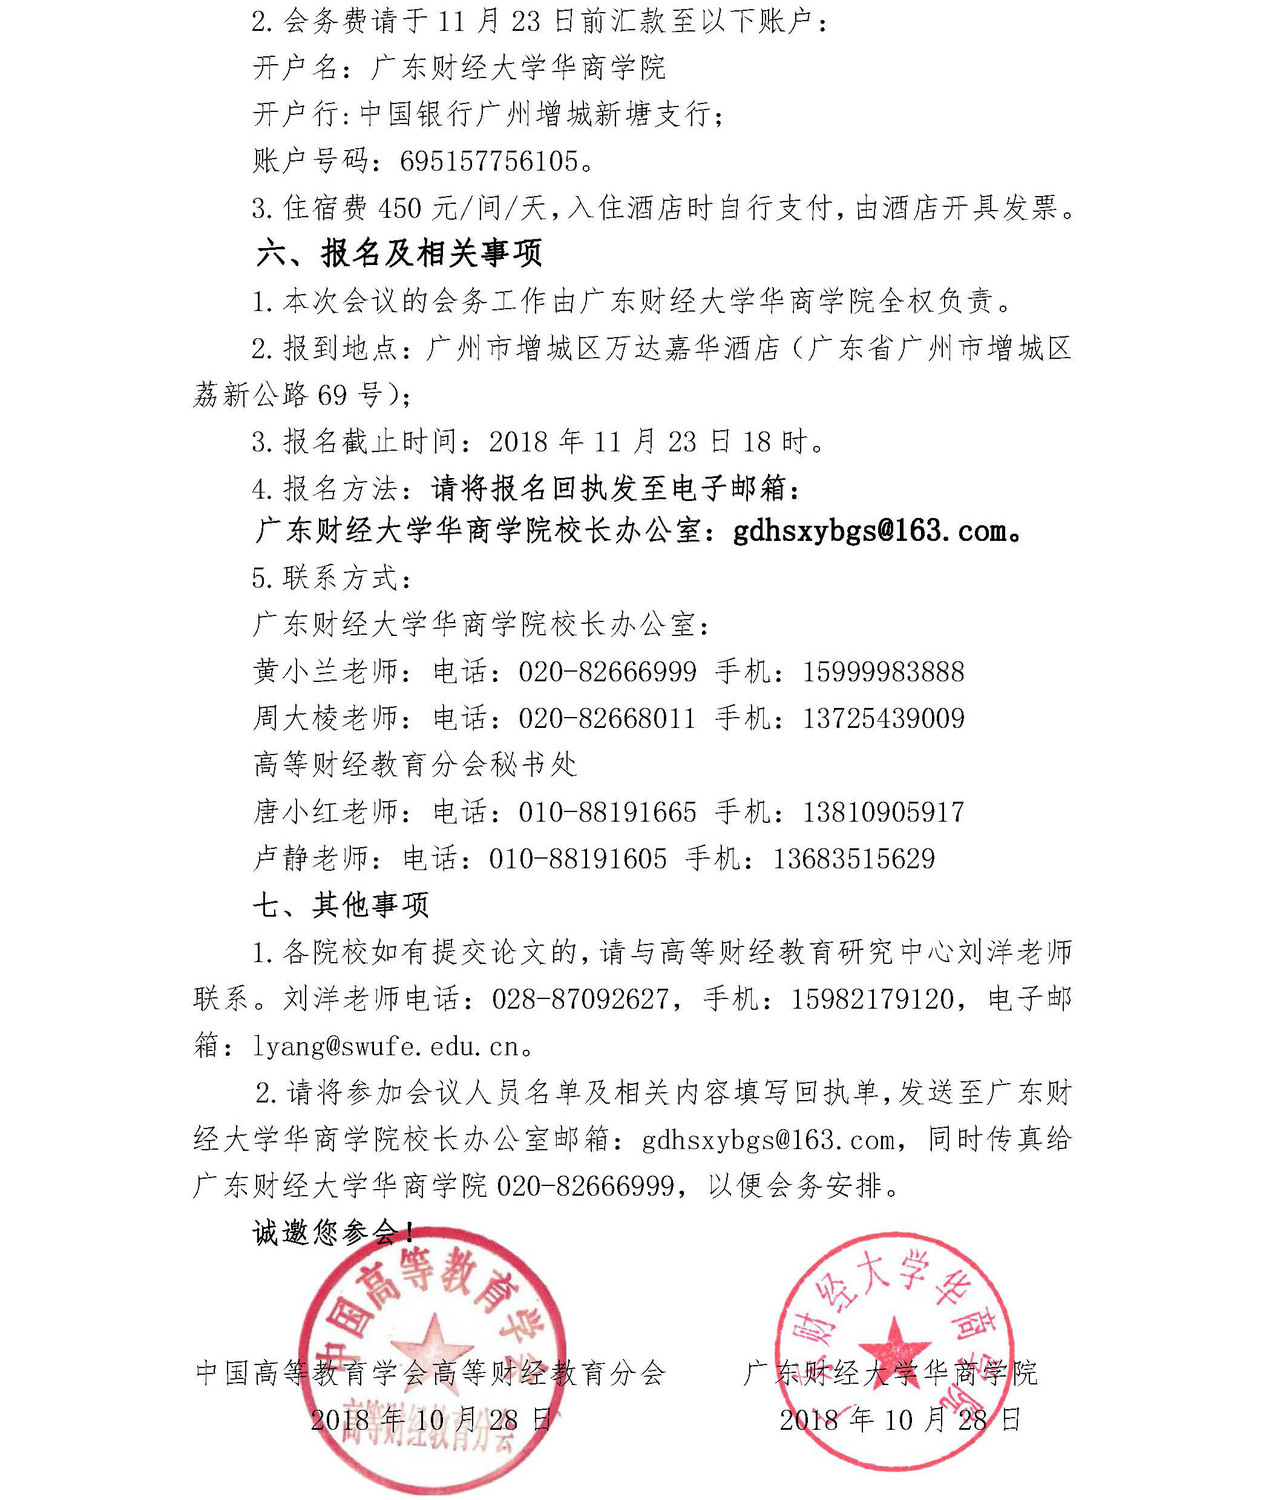 第九届中国高等财经教育校长论坛补充通知_页面_4.jpg